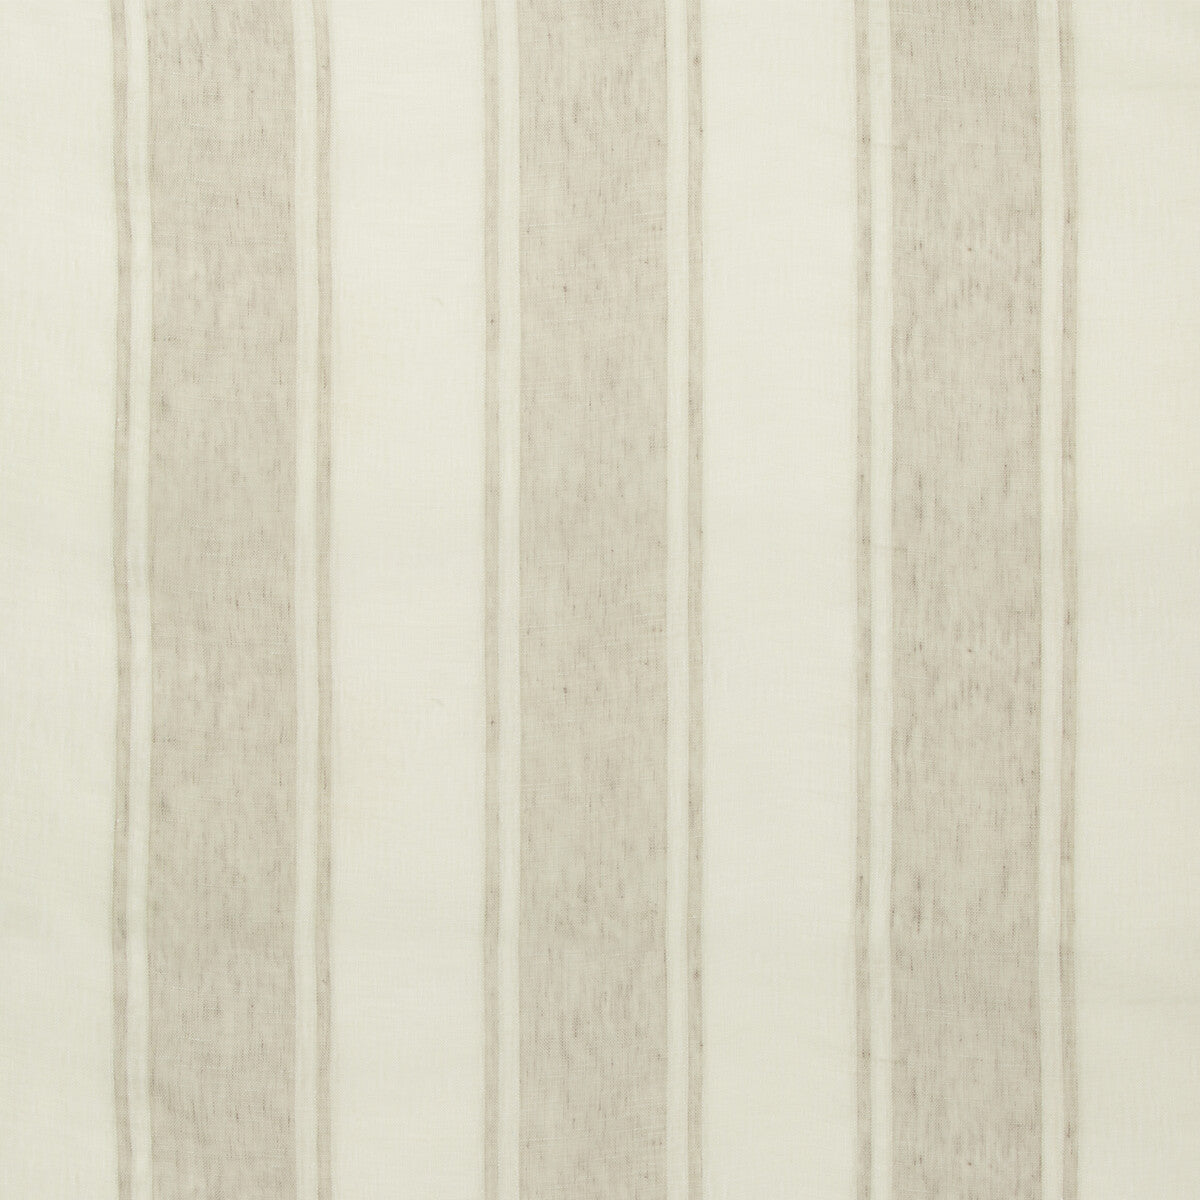 Kravet Basics fabric in 4451-11 color - pattern 4451.11.0 - by Kravet Basics